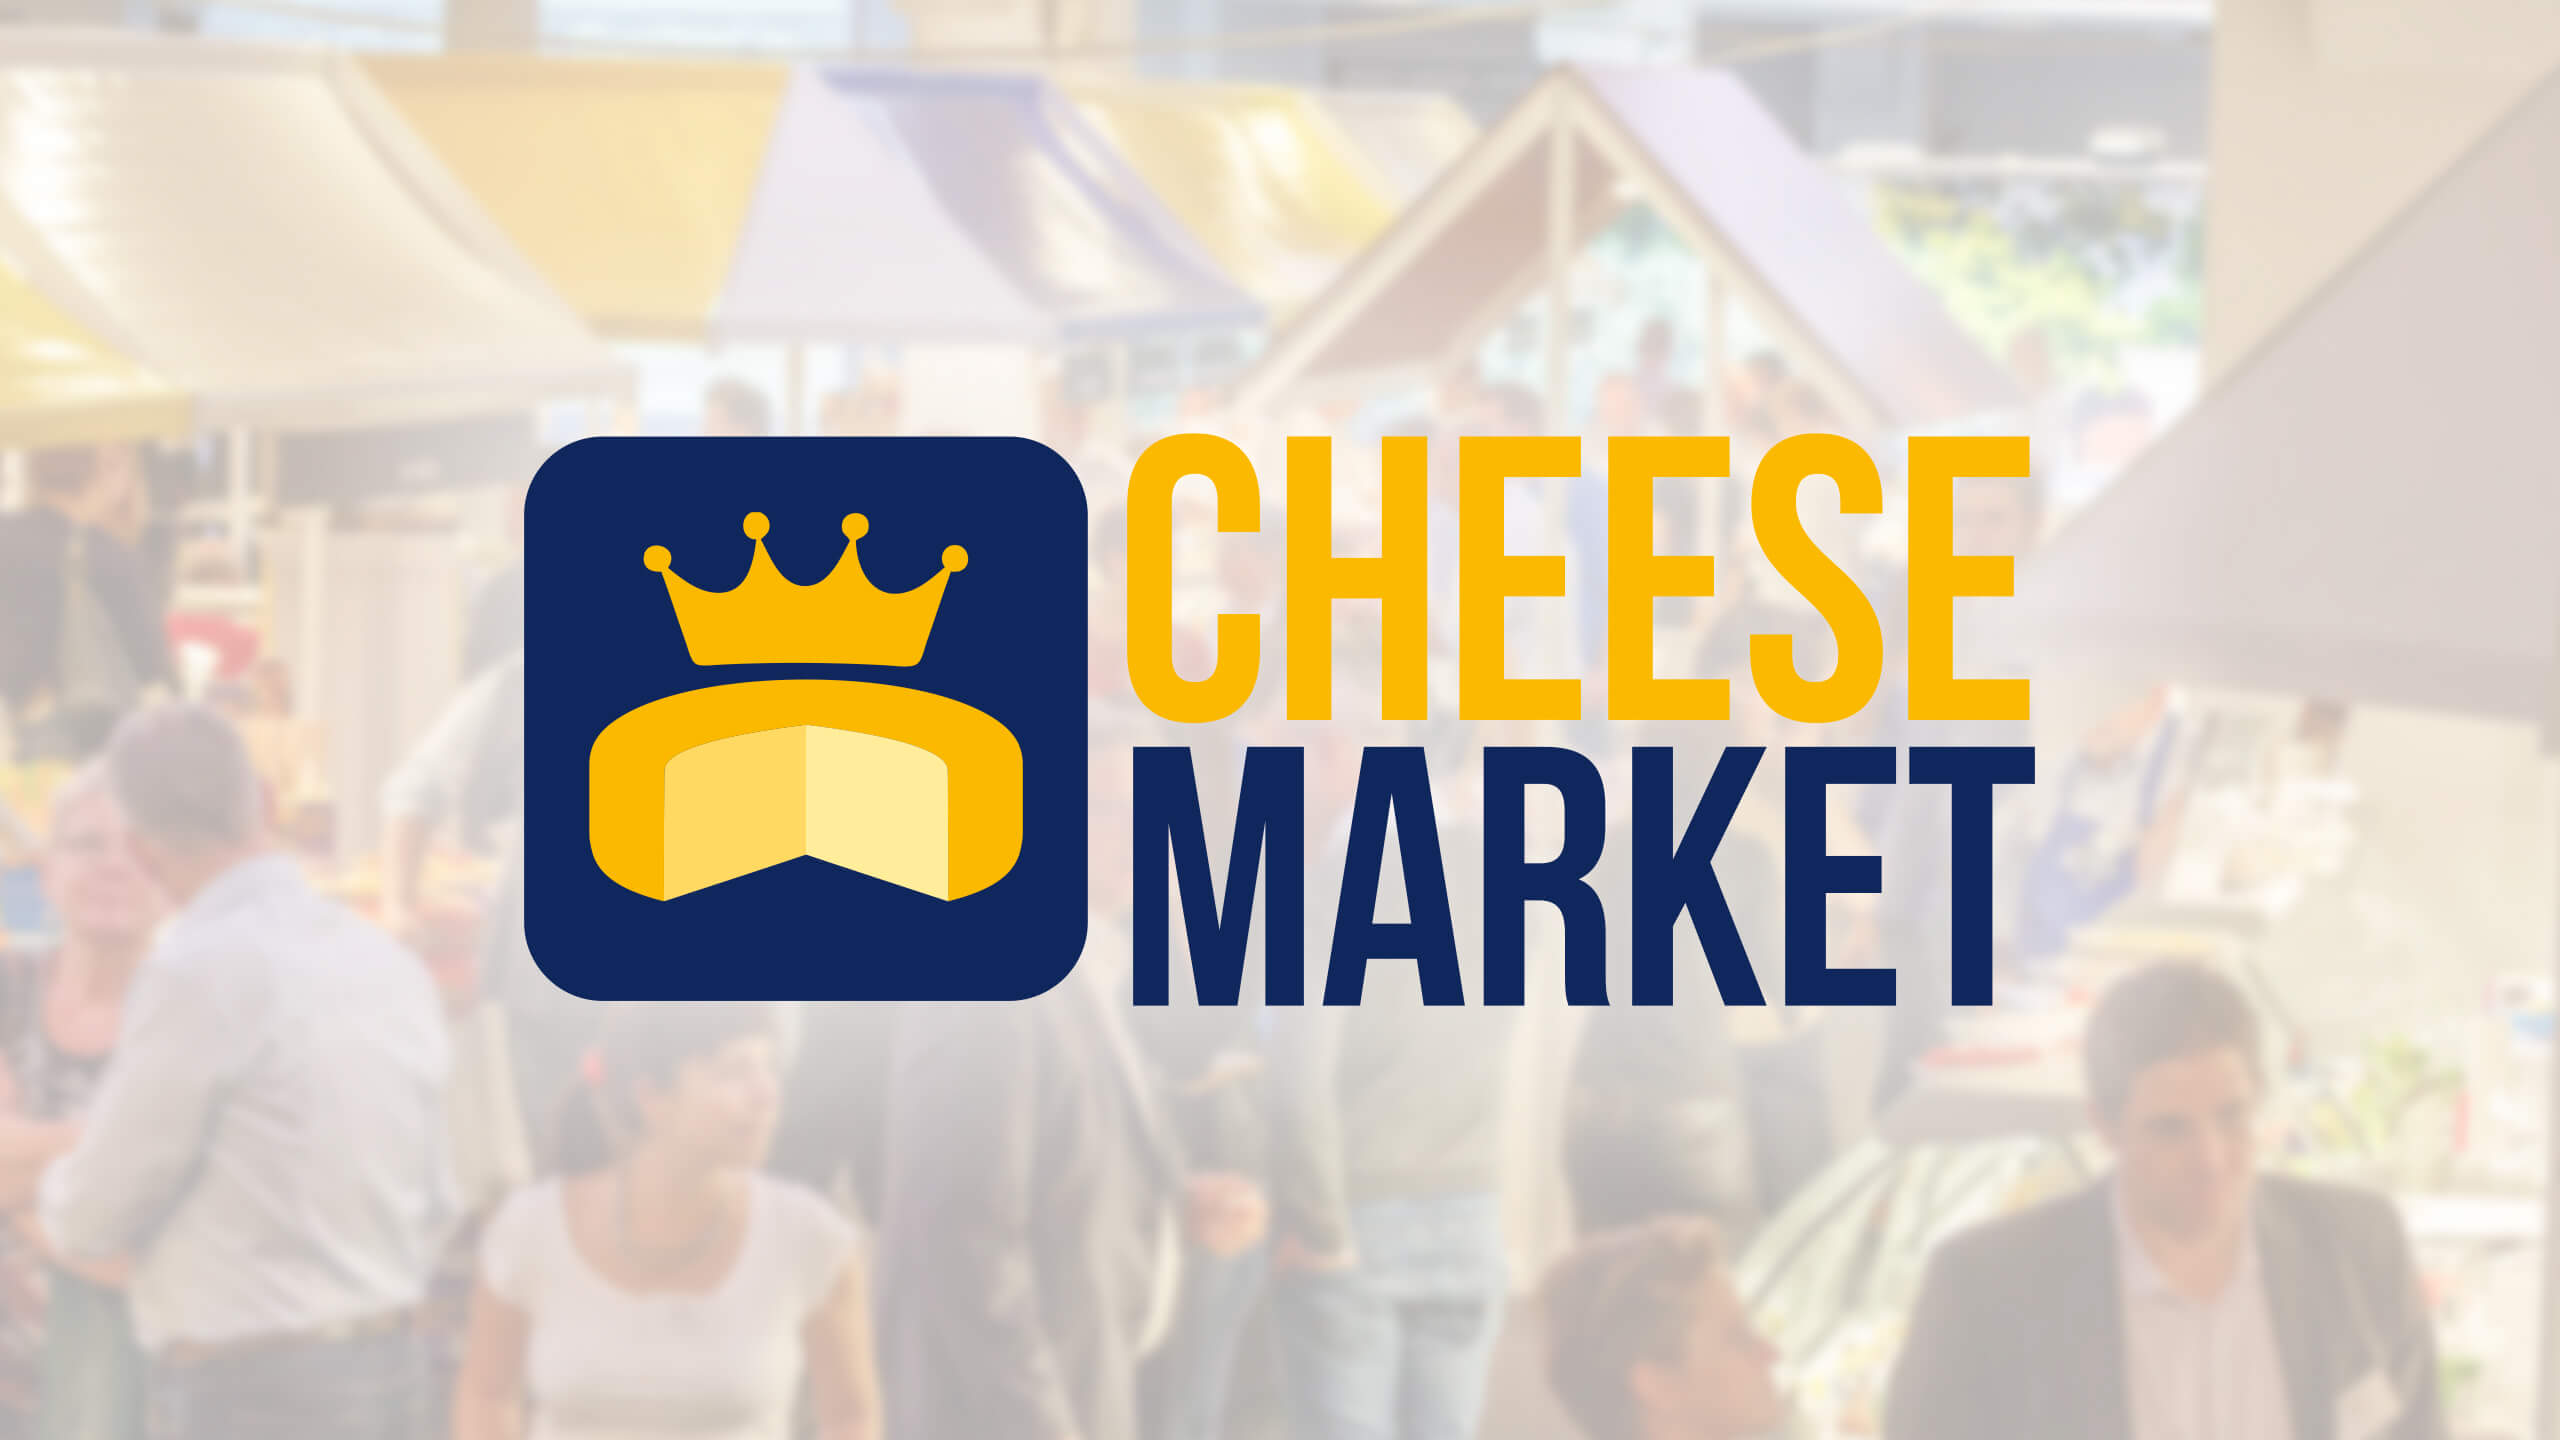 cheesemarket professioneel logo ontwerp